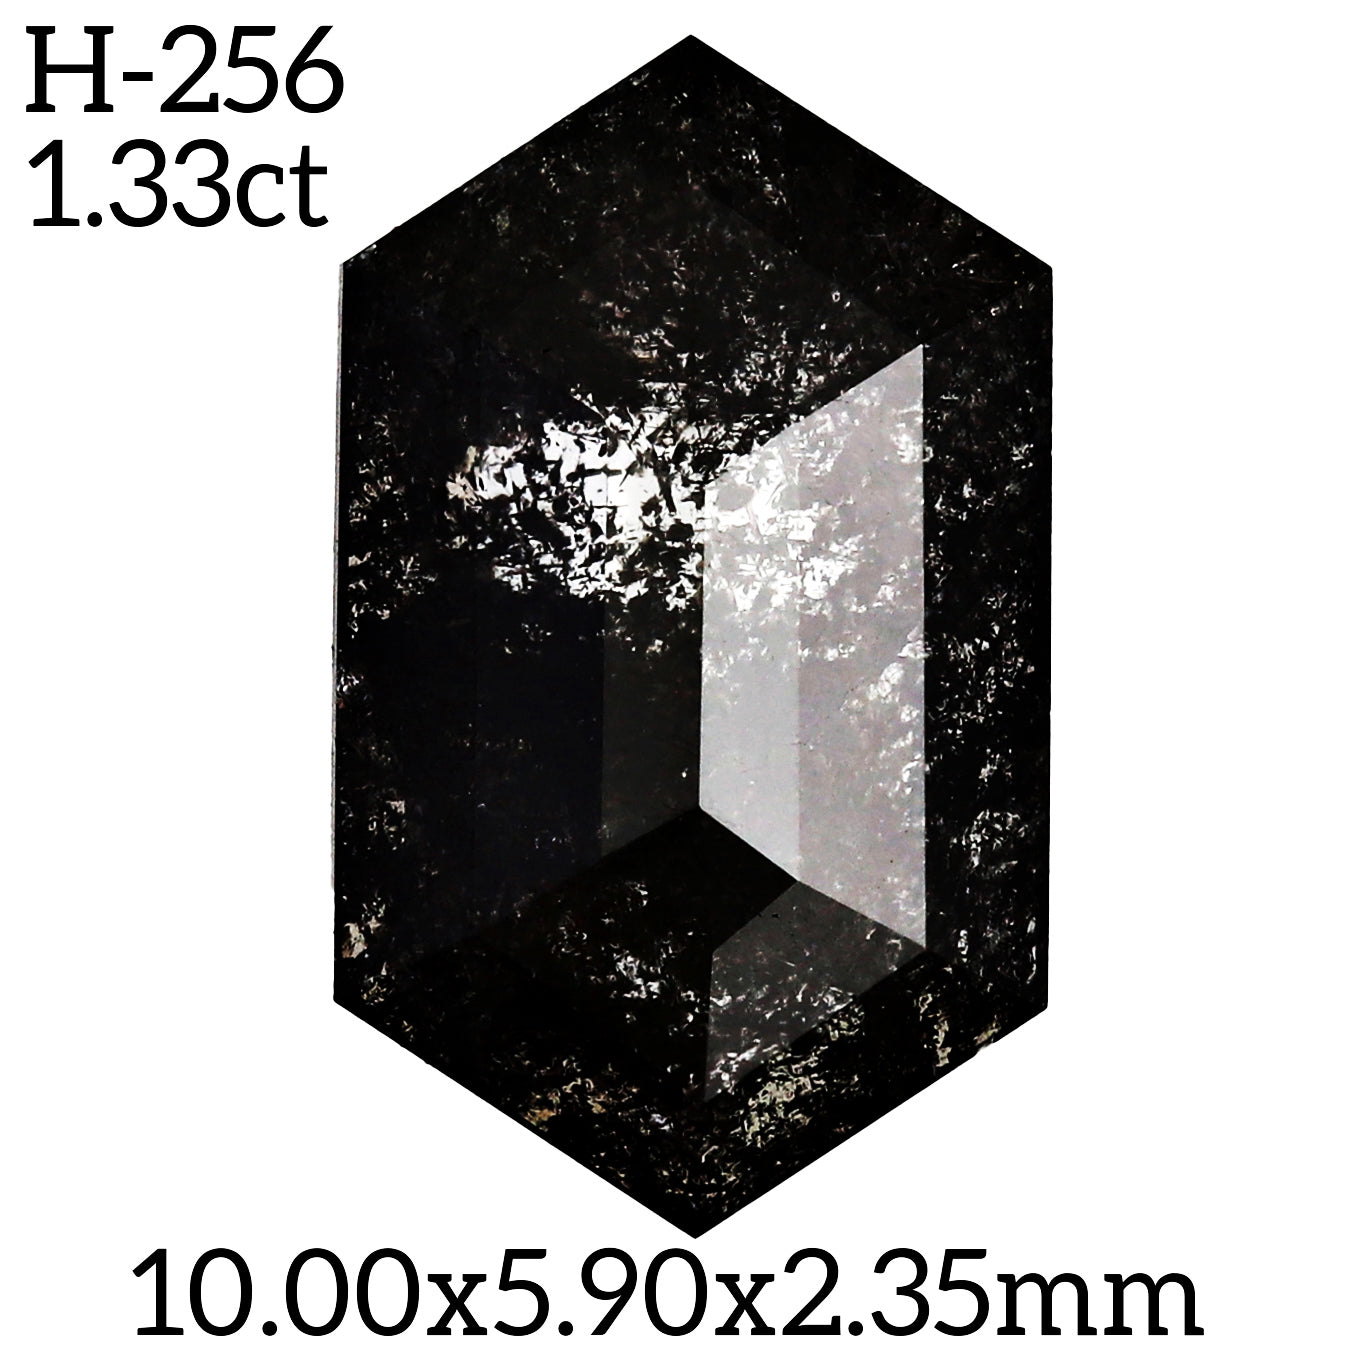 H256 - Salt and pepper hexagon diamond